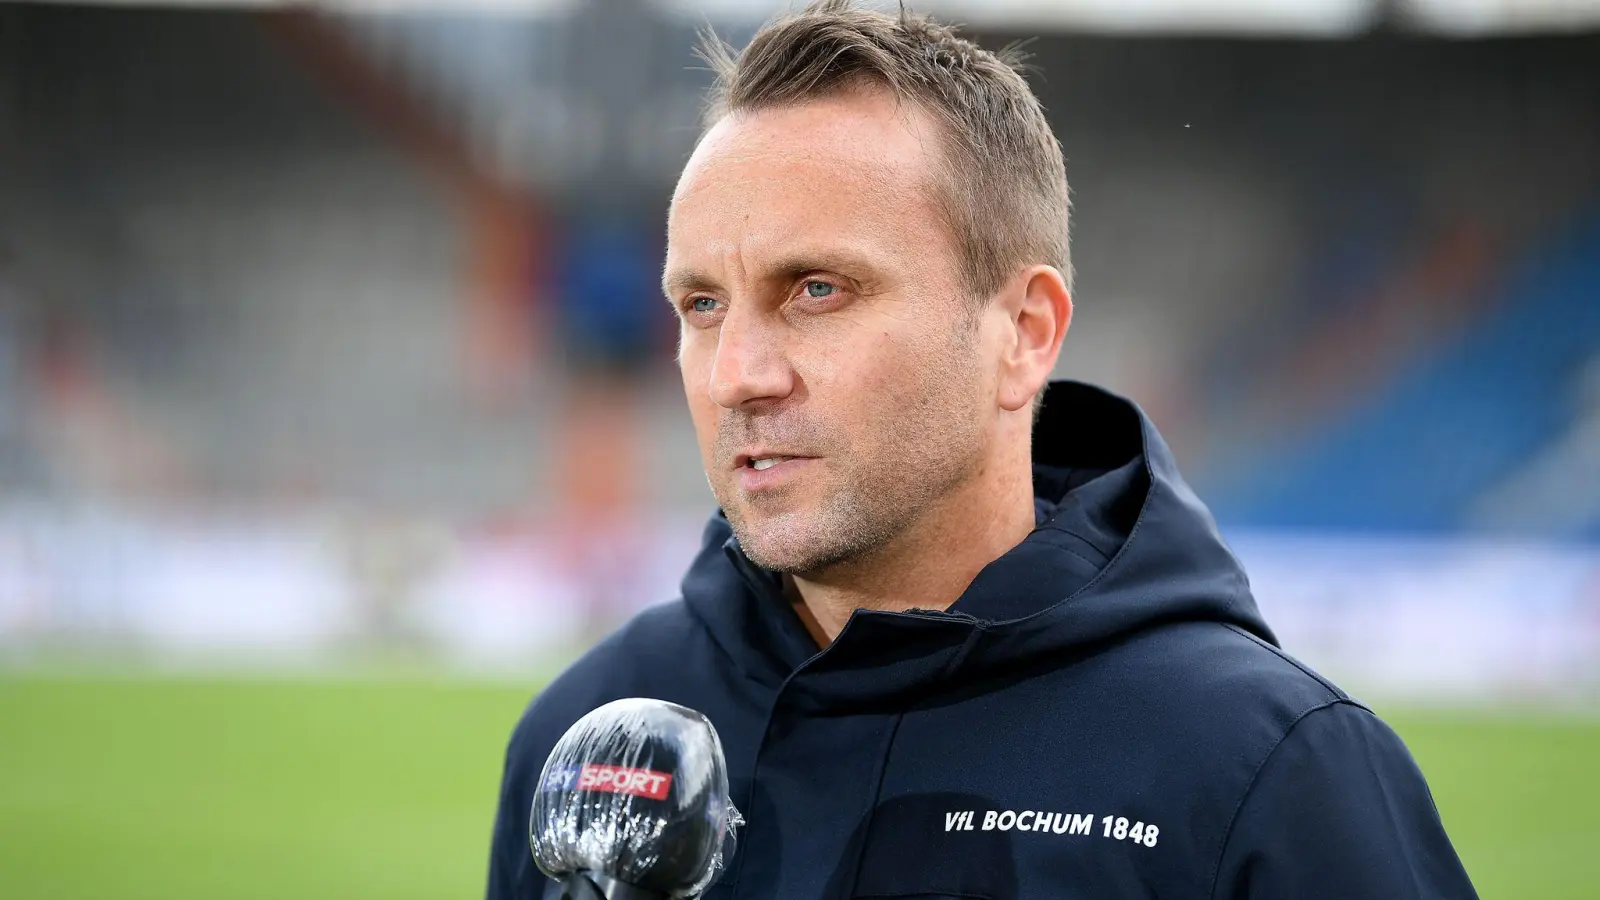 Der Geschäftsführer Sport des Fußball-Bundesligisten VfL Bochum: Sebastian Schindzielorz. (Foto: Lukas Schulze/Getty Images - Pool/dpa)